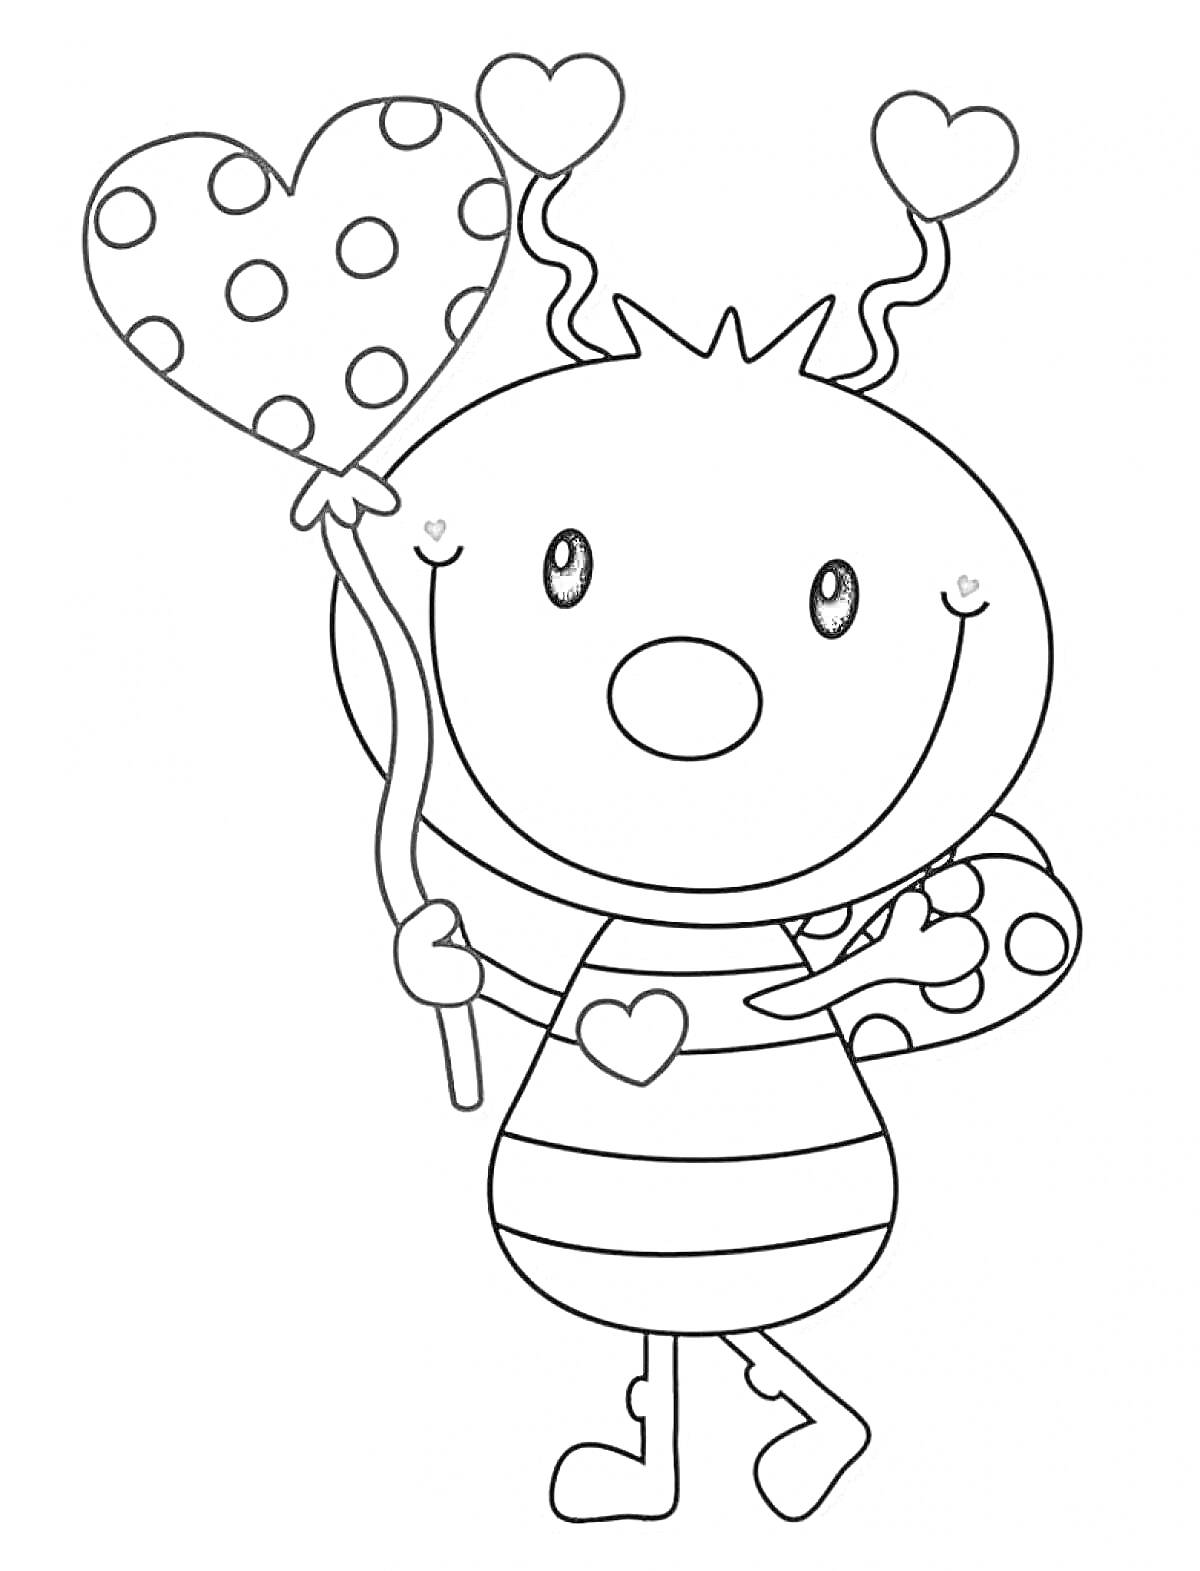 Букашка с полосатым туловищем, держащая в руках воздушный шар в форме сердца